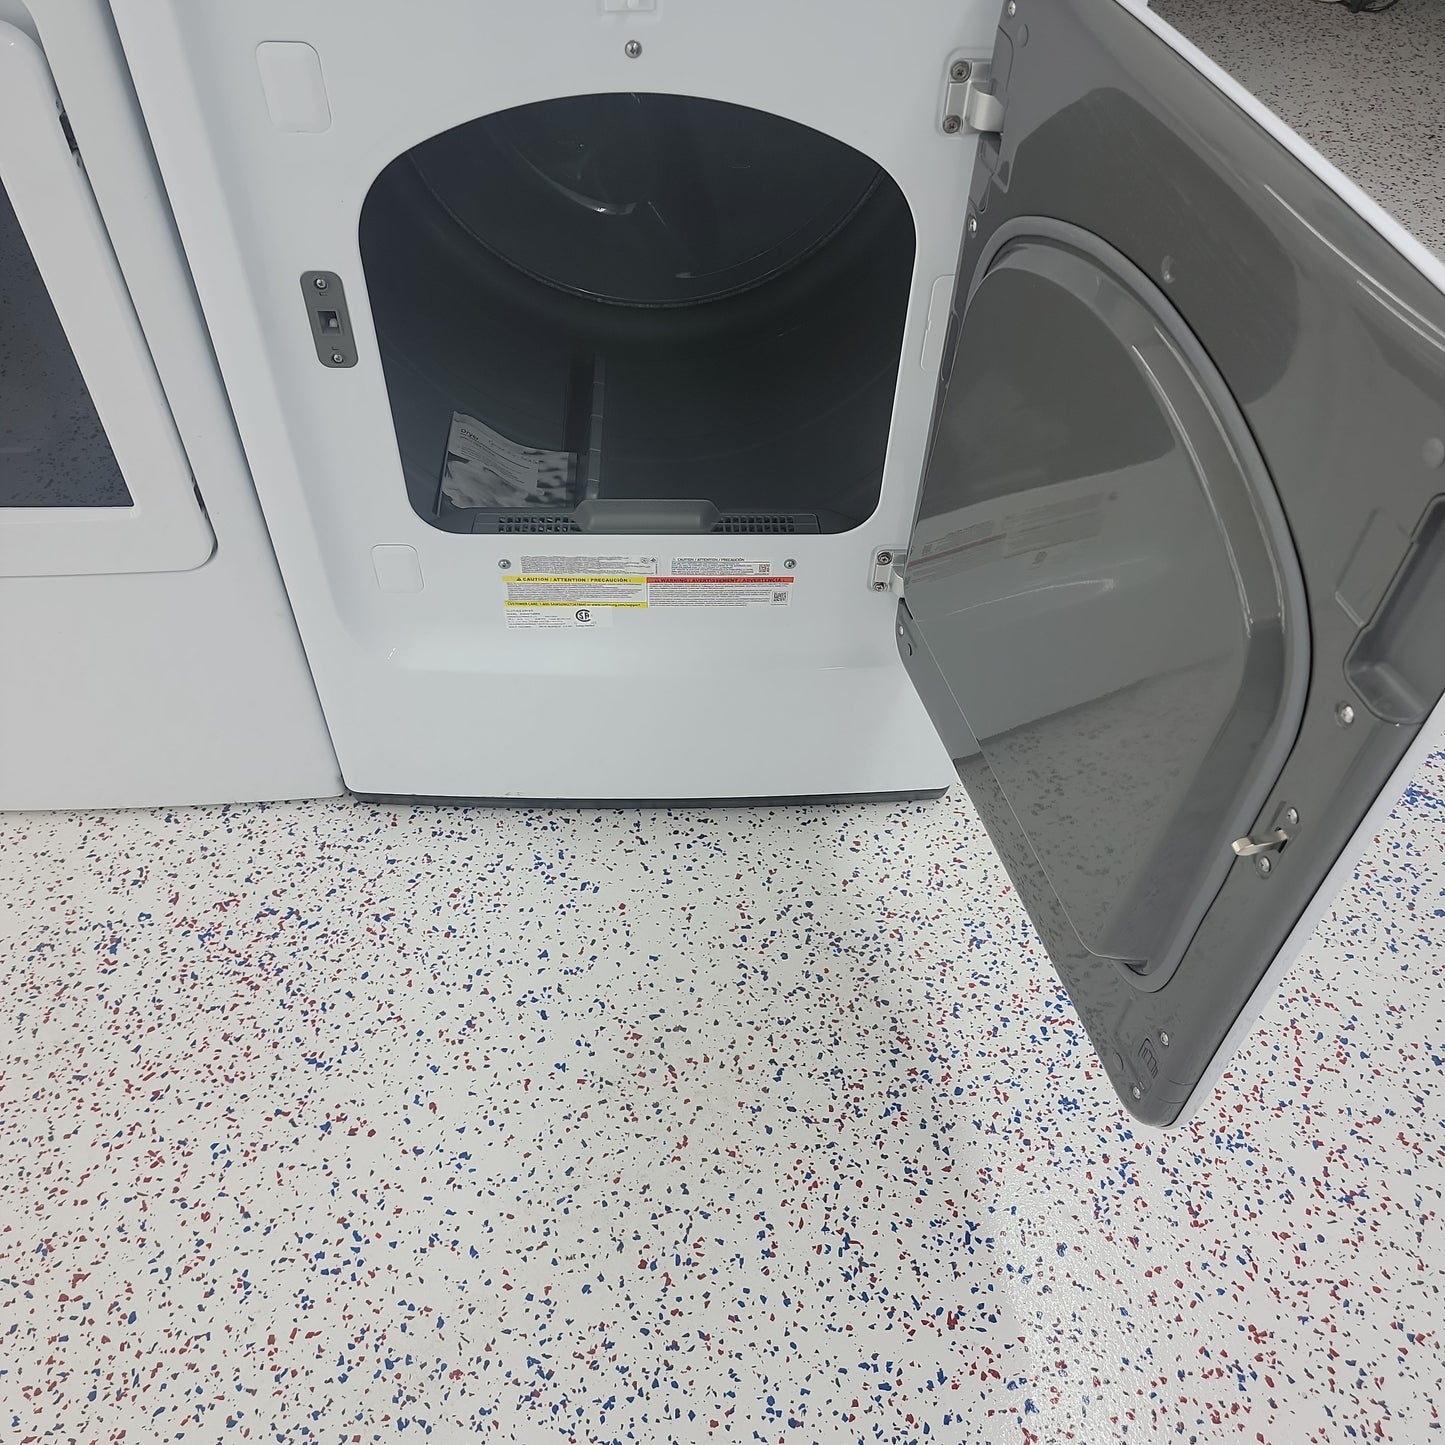 Samsung Gas dryer